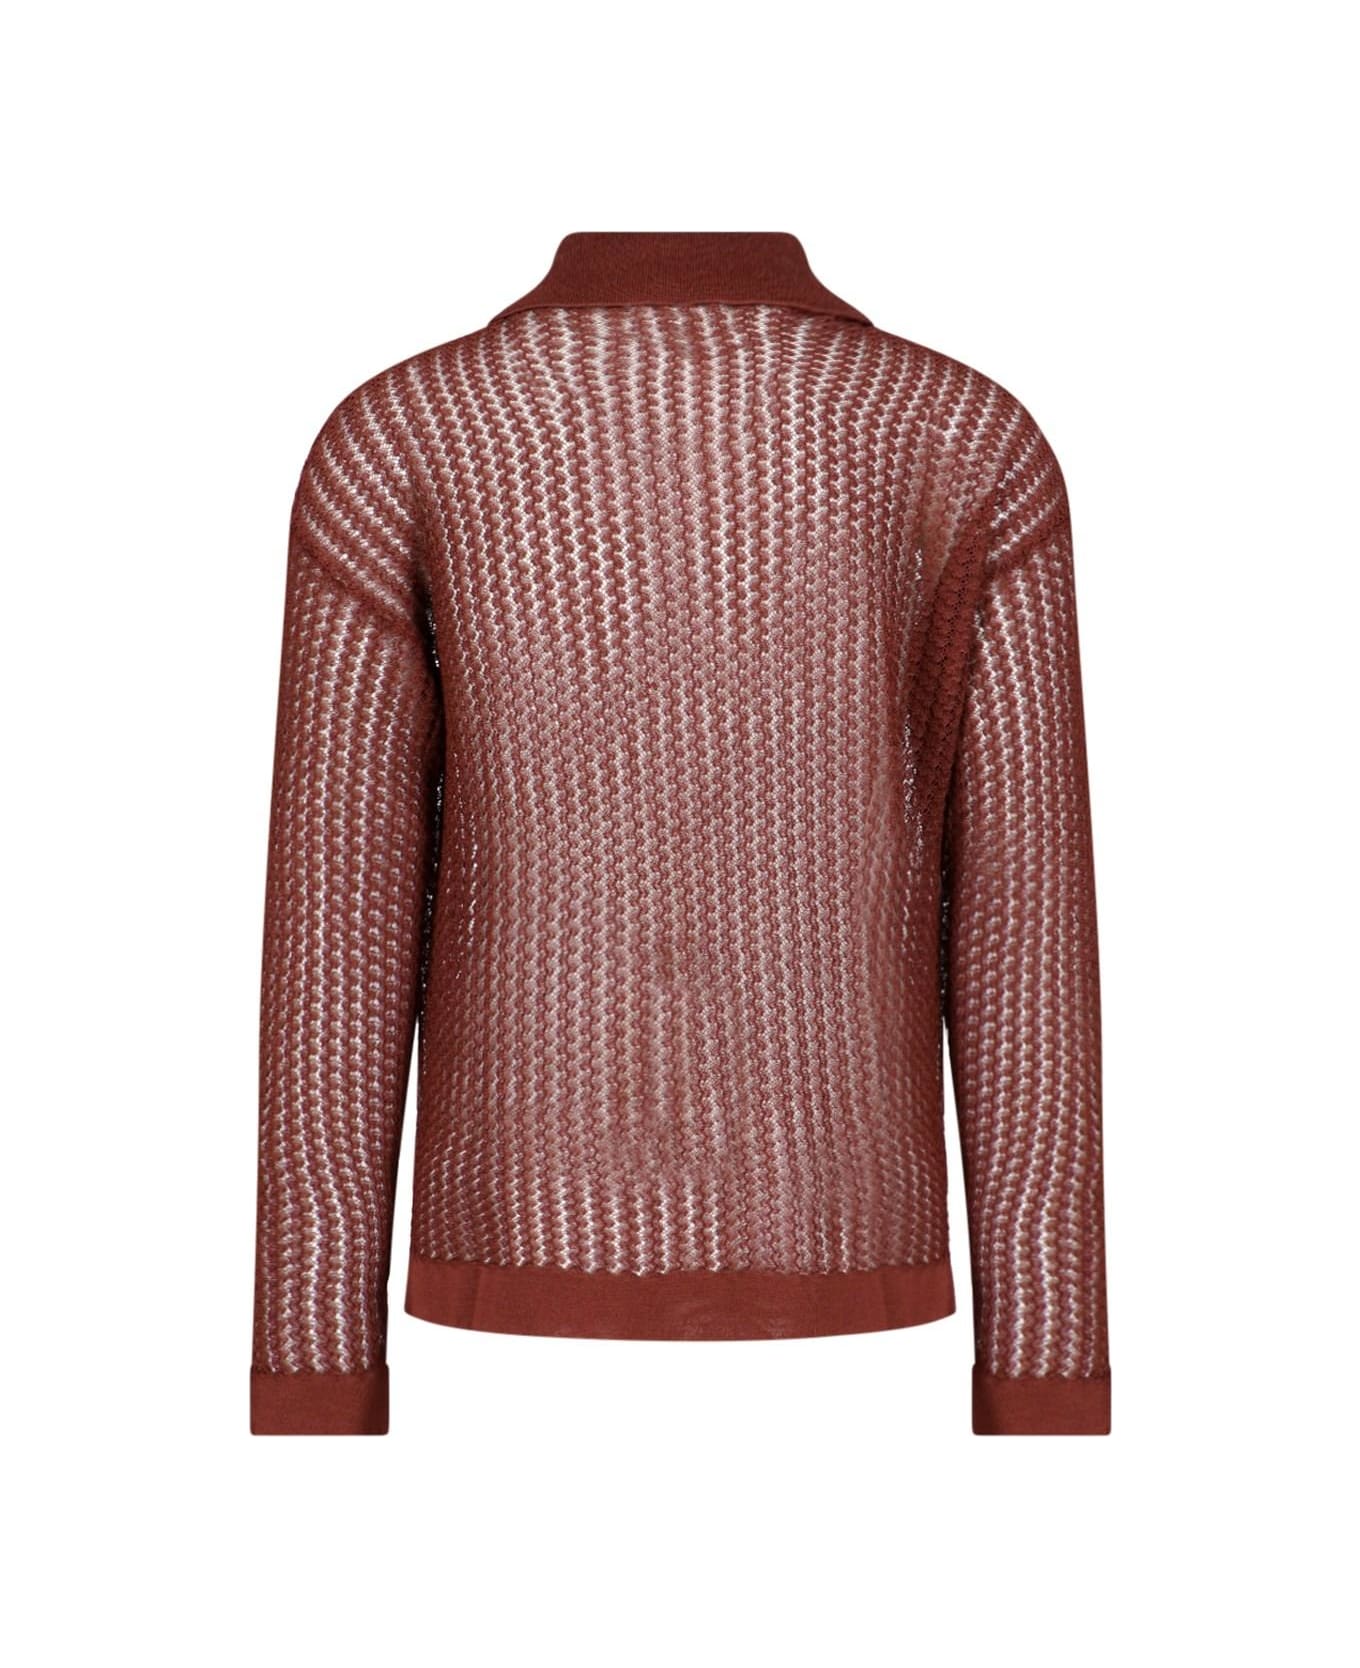 Bonsai Openwork Sweater - Brown